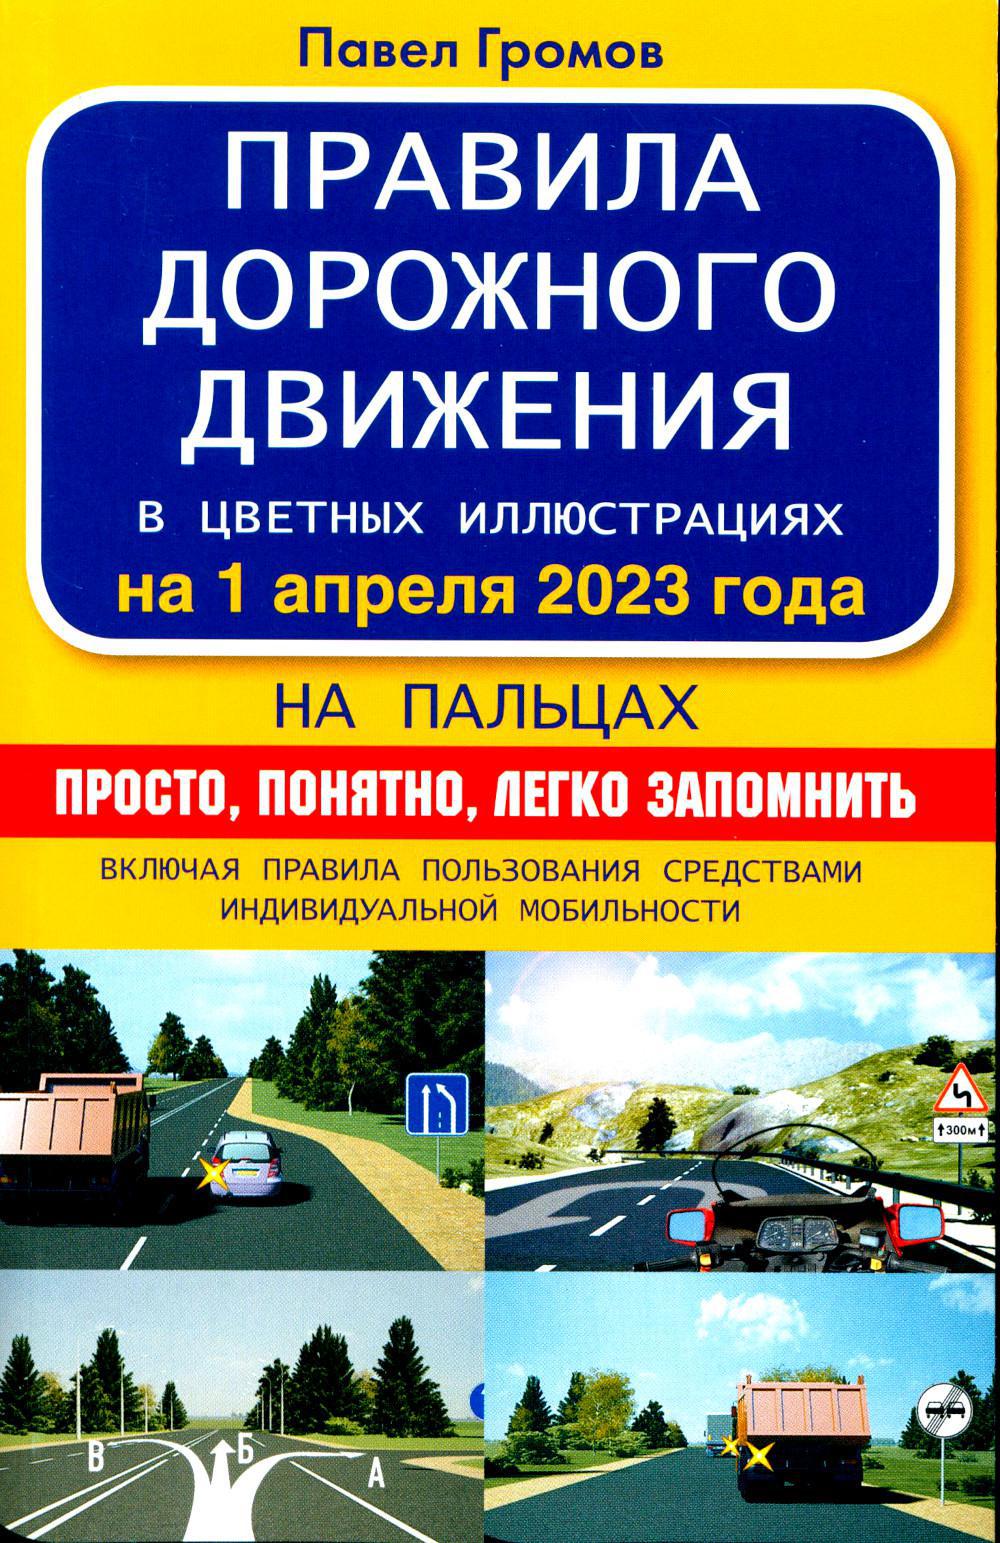 Правила дорожного движения на пальцах: просто, понятно, легко запомнить на 1 апреля 2023 года. Включая правила пользования средствами индивидуальной м